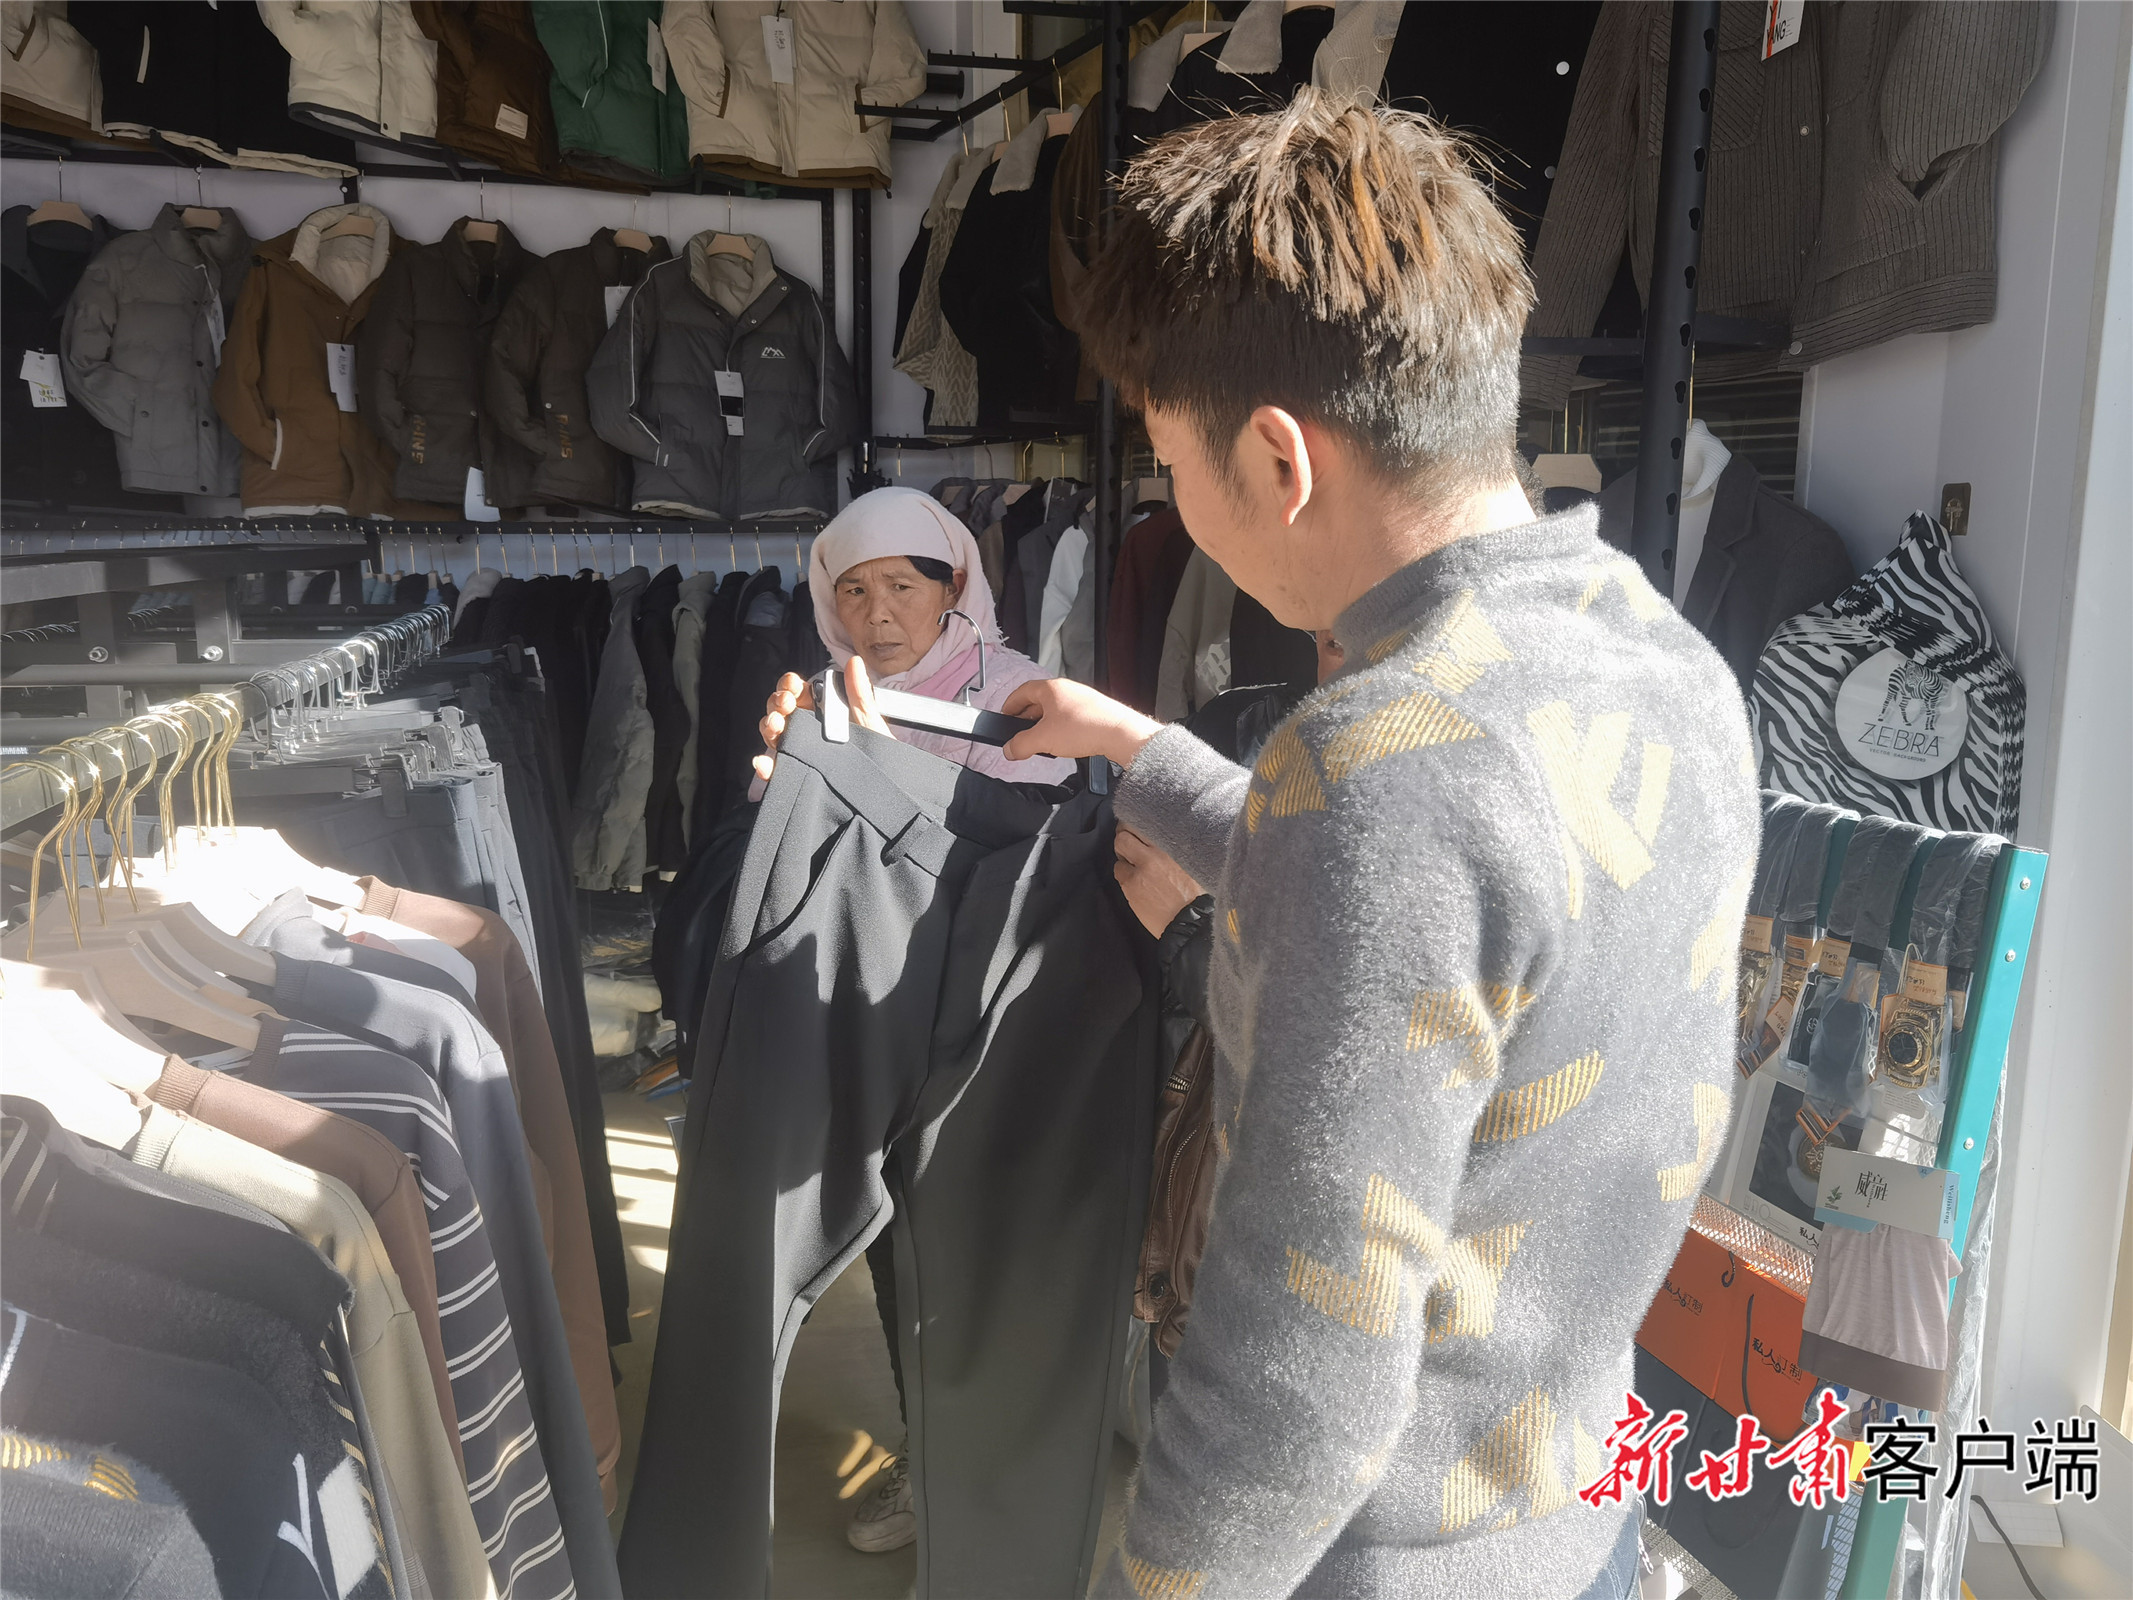 张财梅在集市上给家人买衣服 图片和视频均由新甘肃·甘肃日报记者 冯